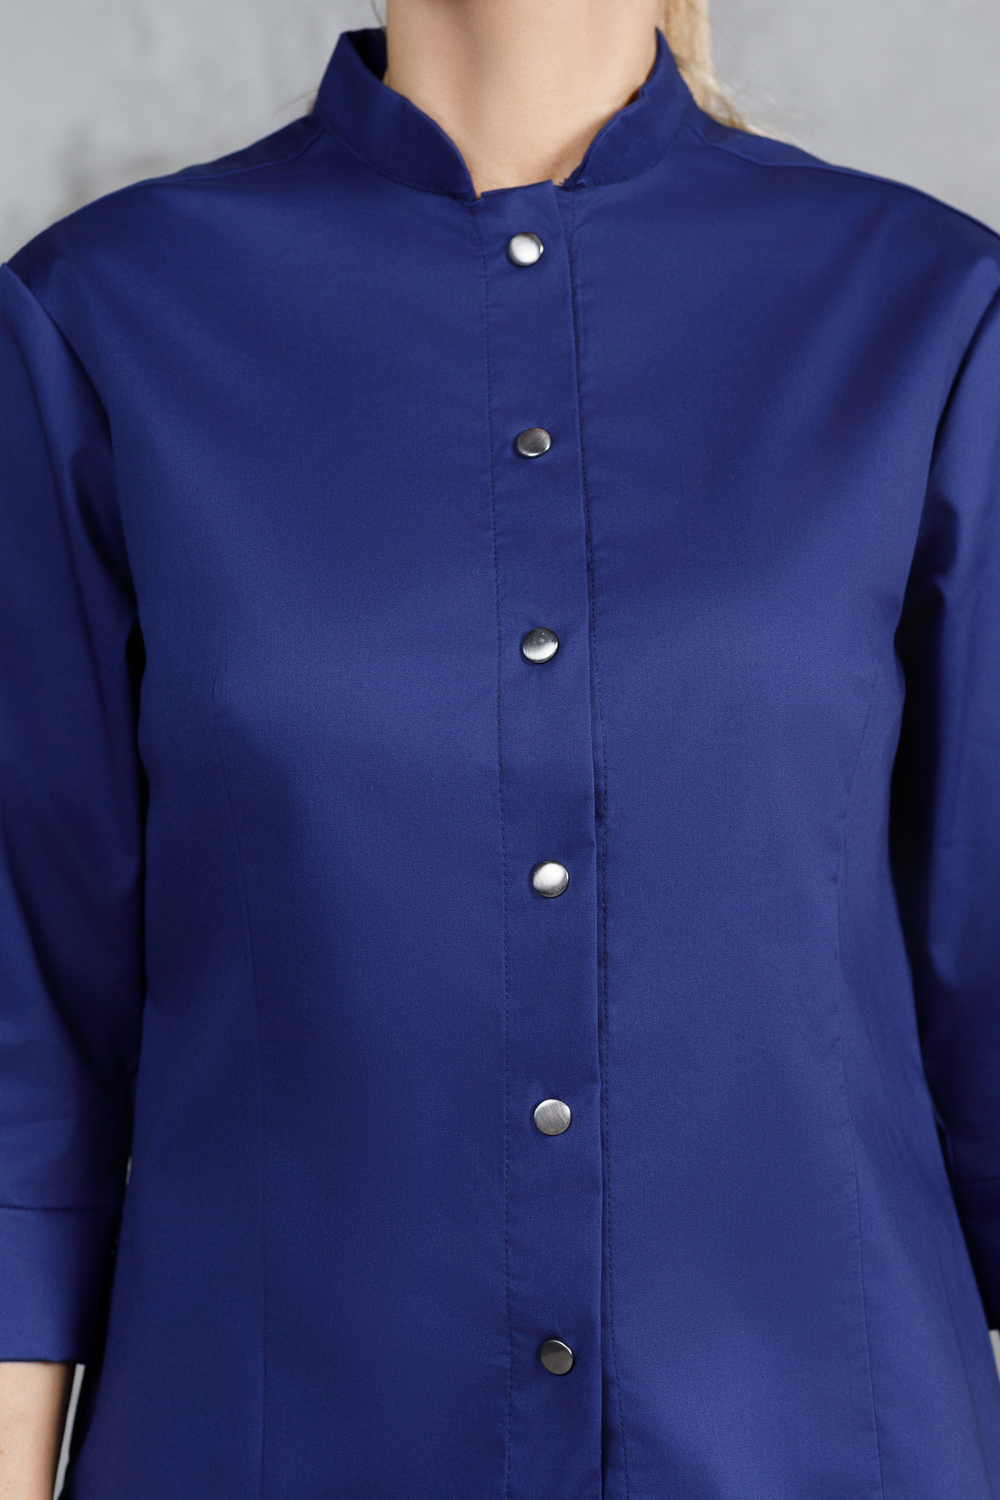 Рубашка - китель с прямой застежкой синяя женская